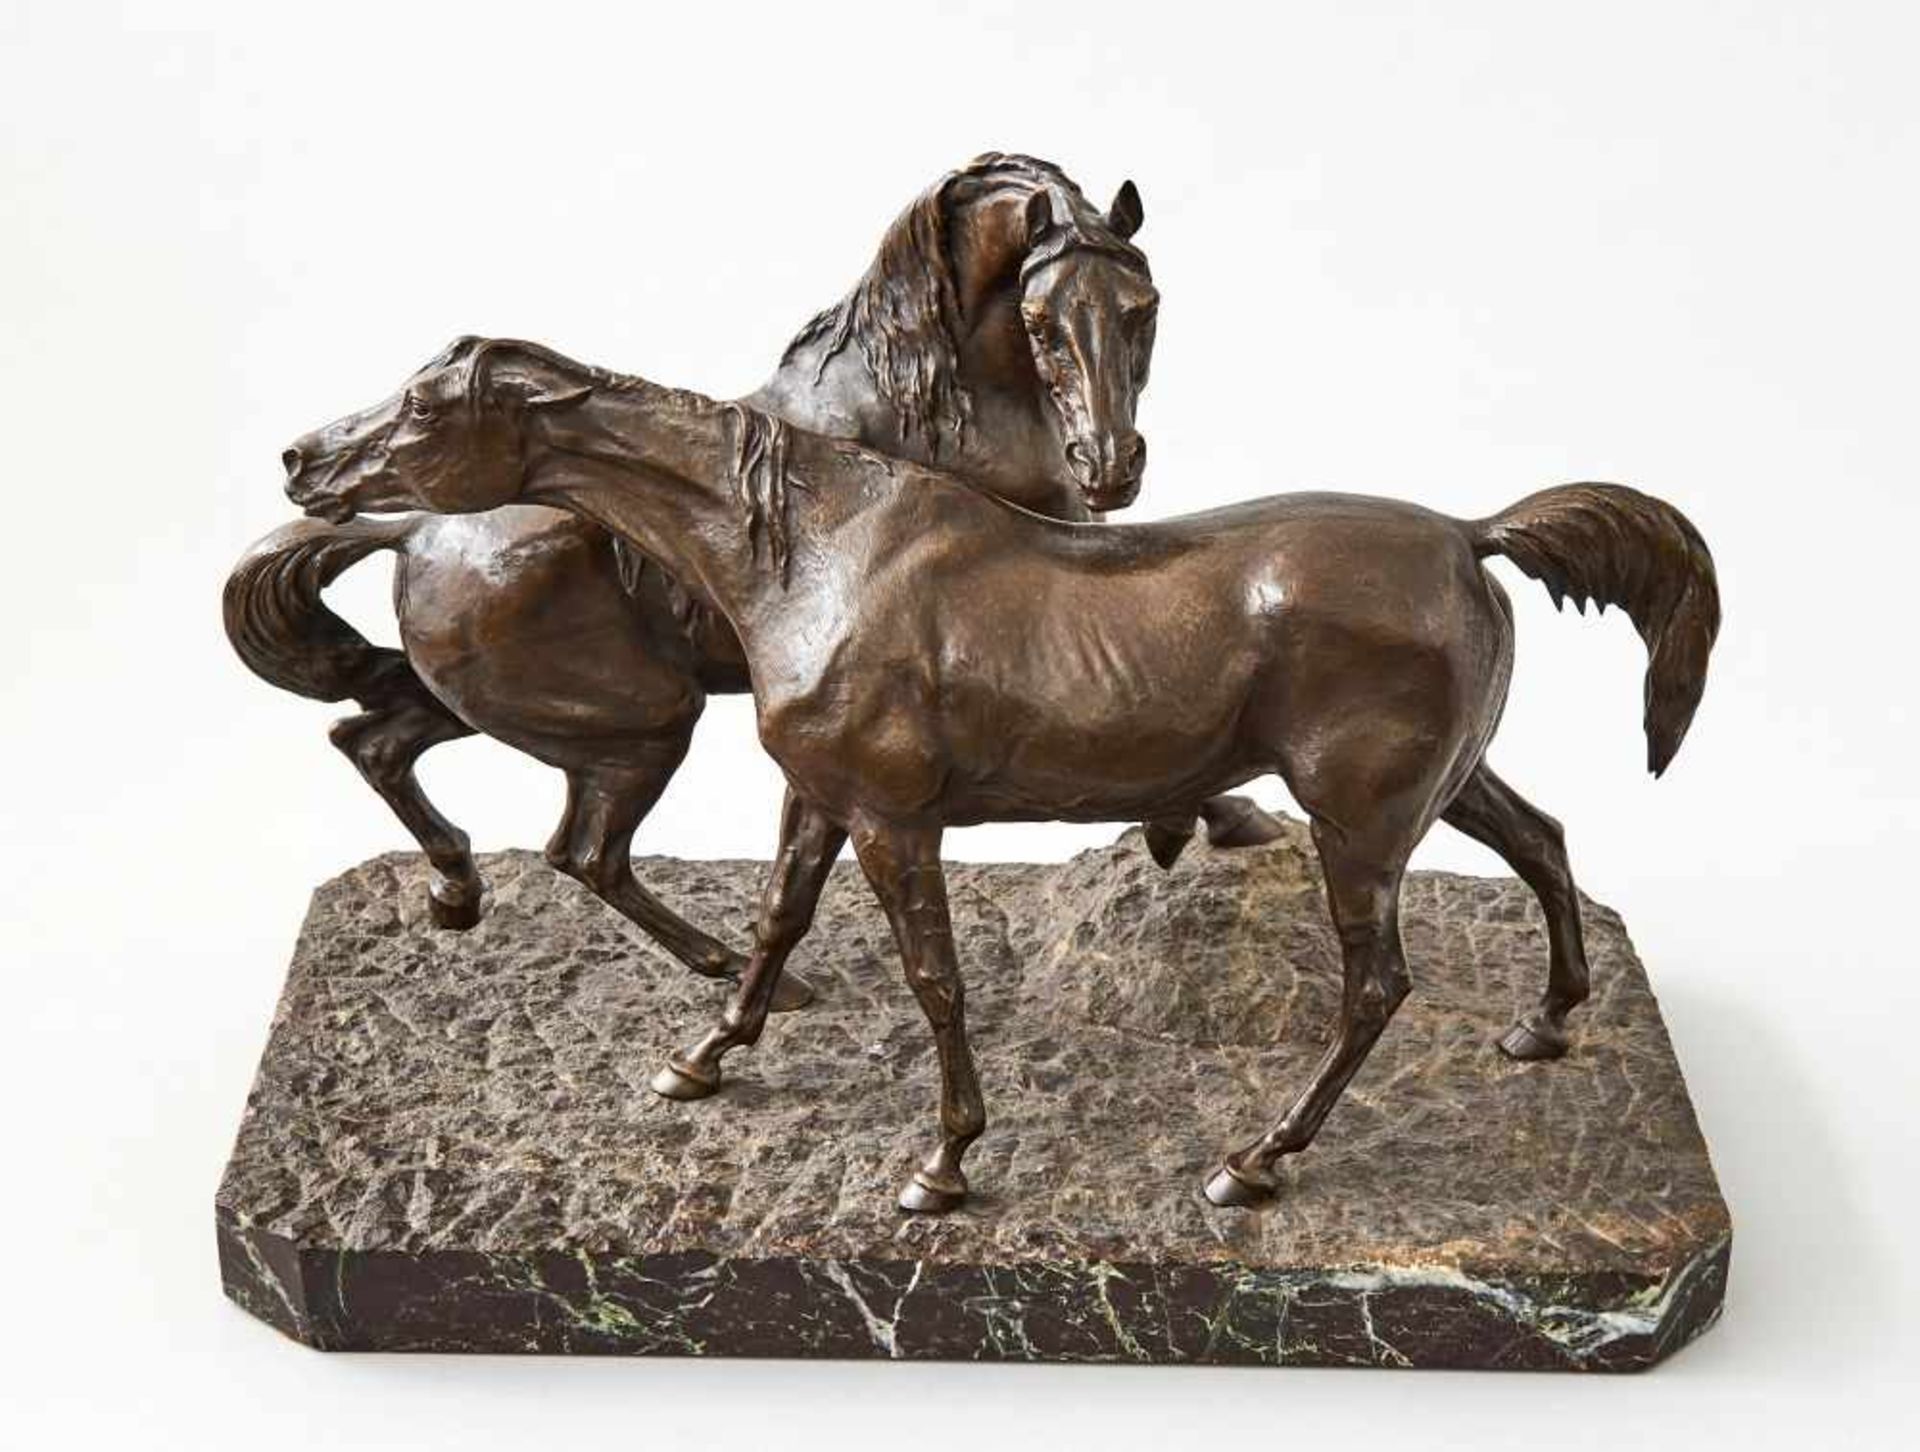 PferdePierre Jules zugeschr. Mene, (1810-1879)Bronze auf Marmorsockel montiert, 19. Jhdt. Höhe 34